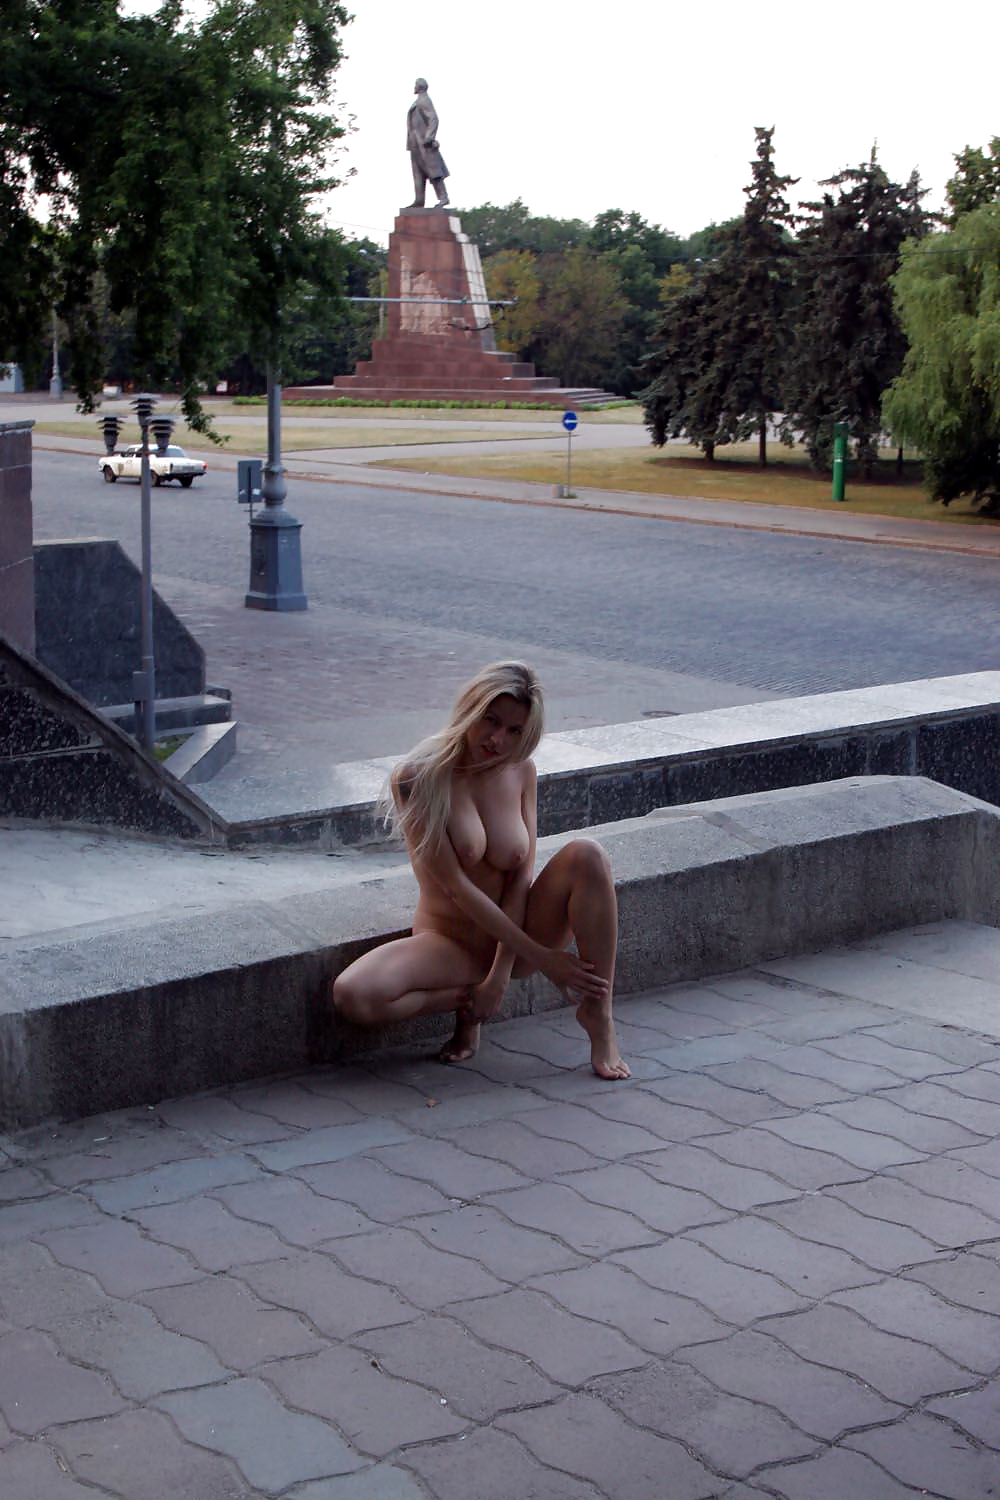 Ragazze nude in pubblico #4
 #36176515